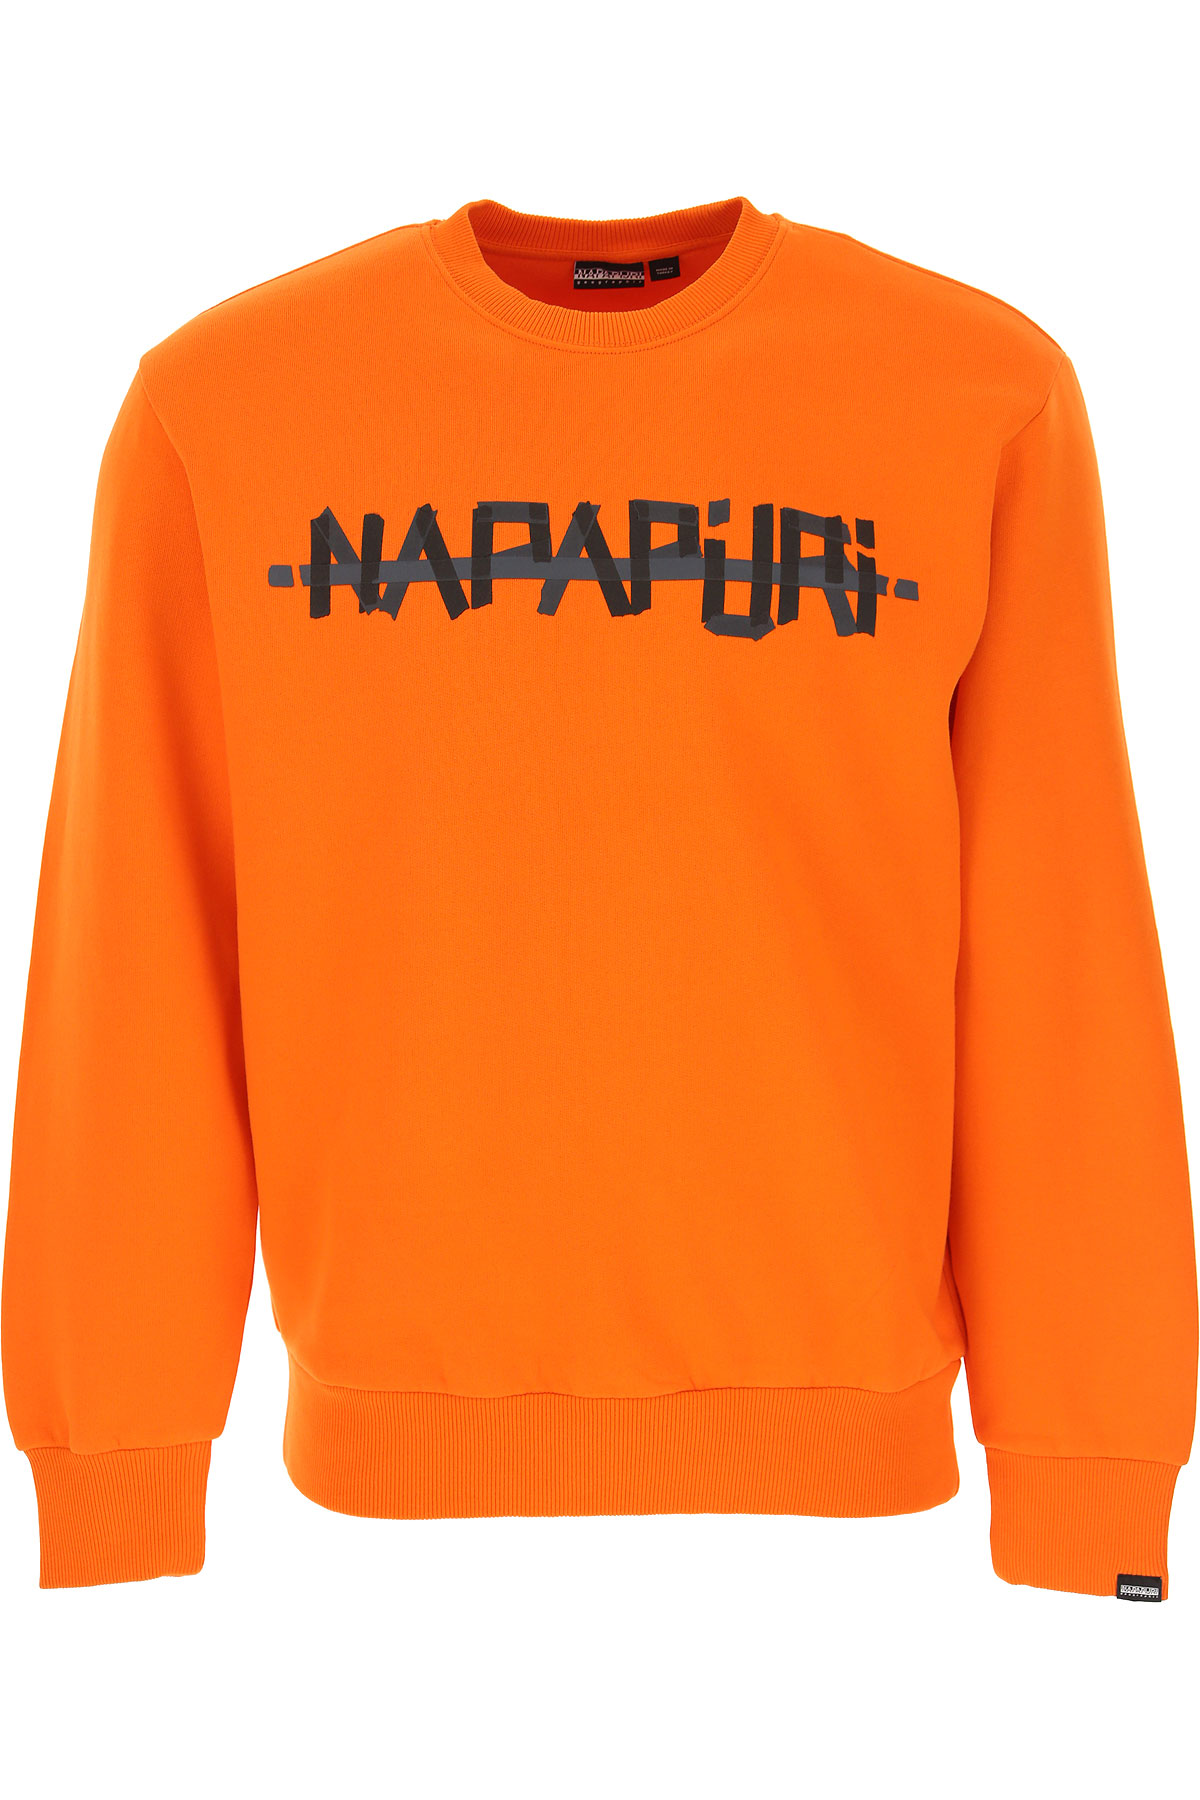 Napapijri Sweatshirt für Herren, Kapuzenpulli, Hoodie, Sweats Günstig im Sale, Orange, Baumwolle, 2017, L M S XS